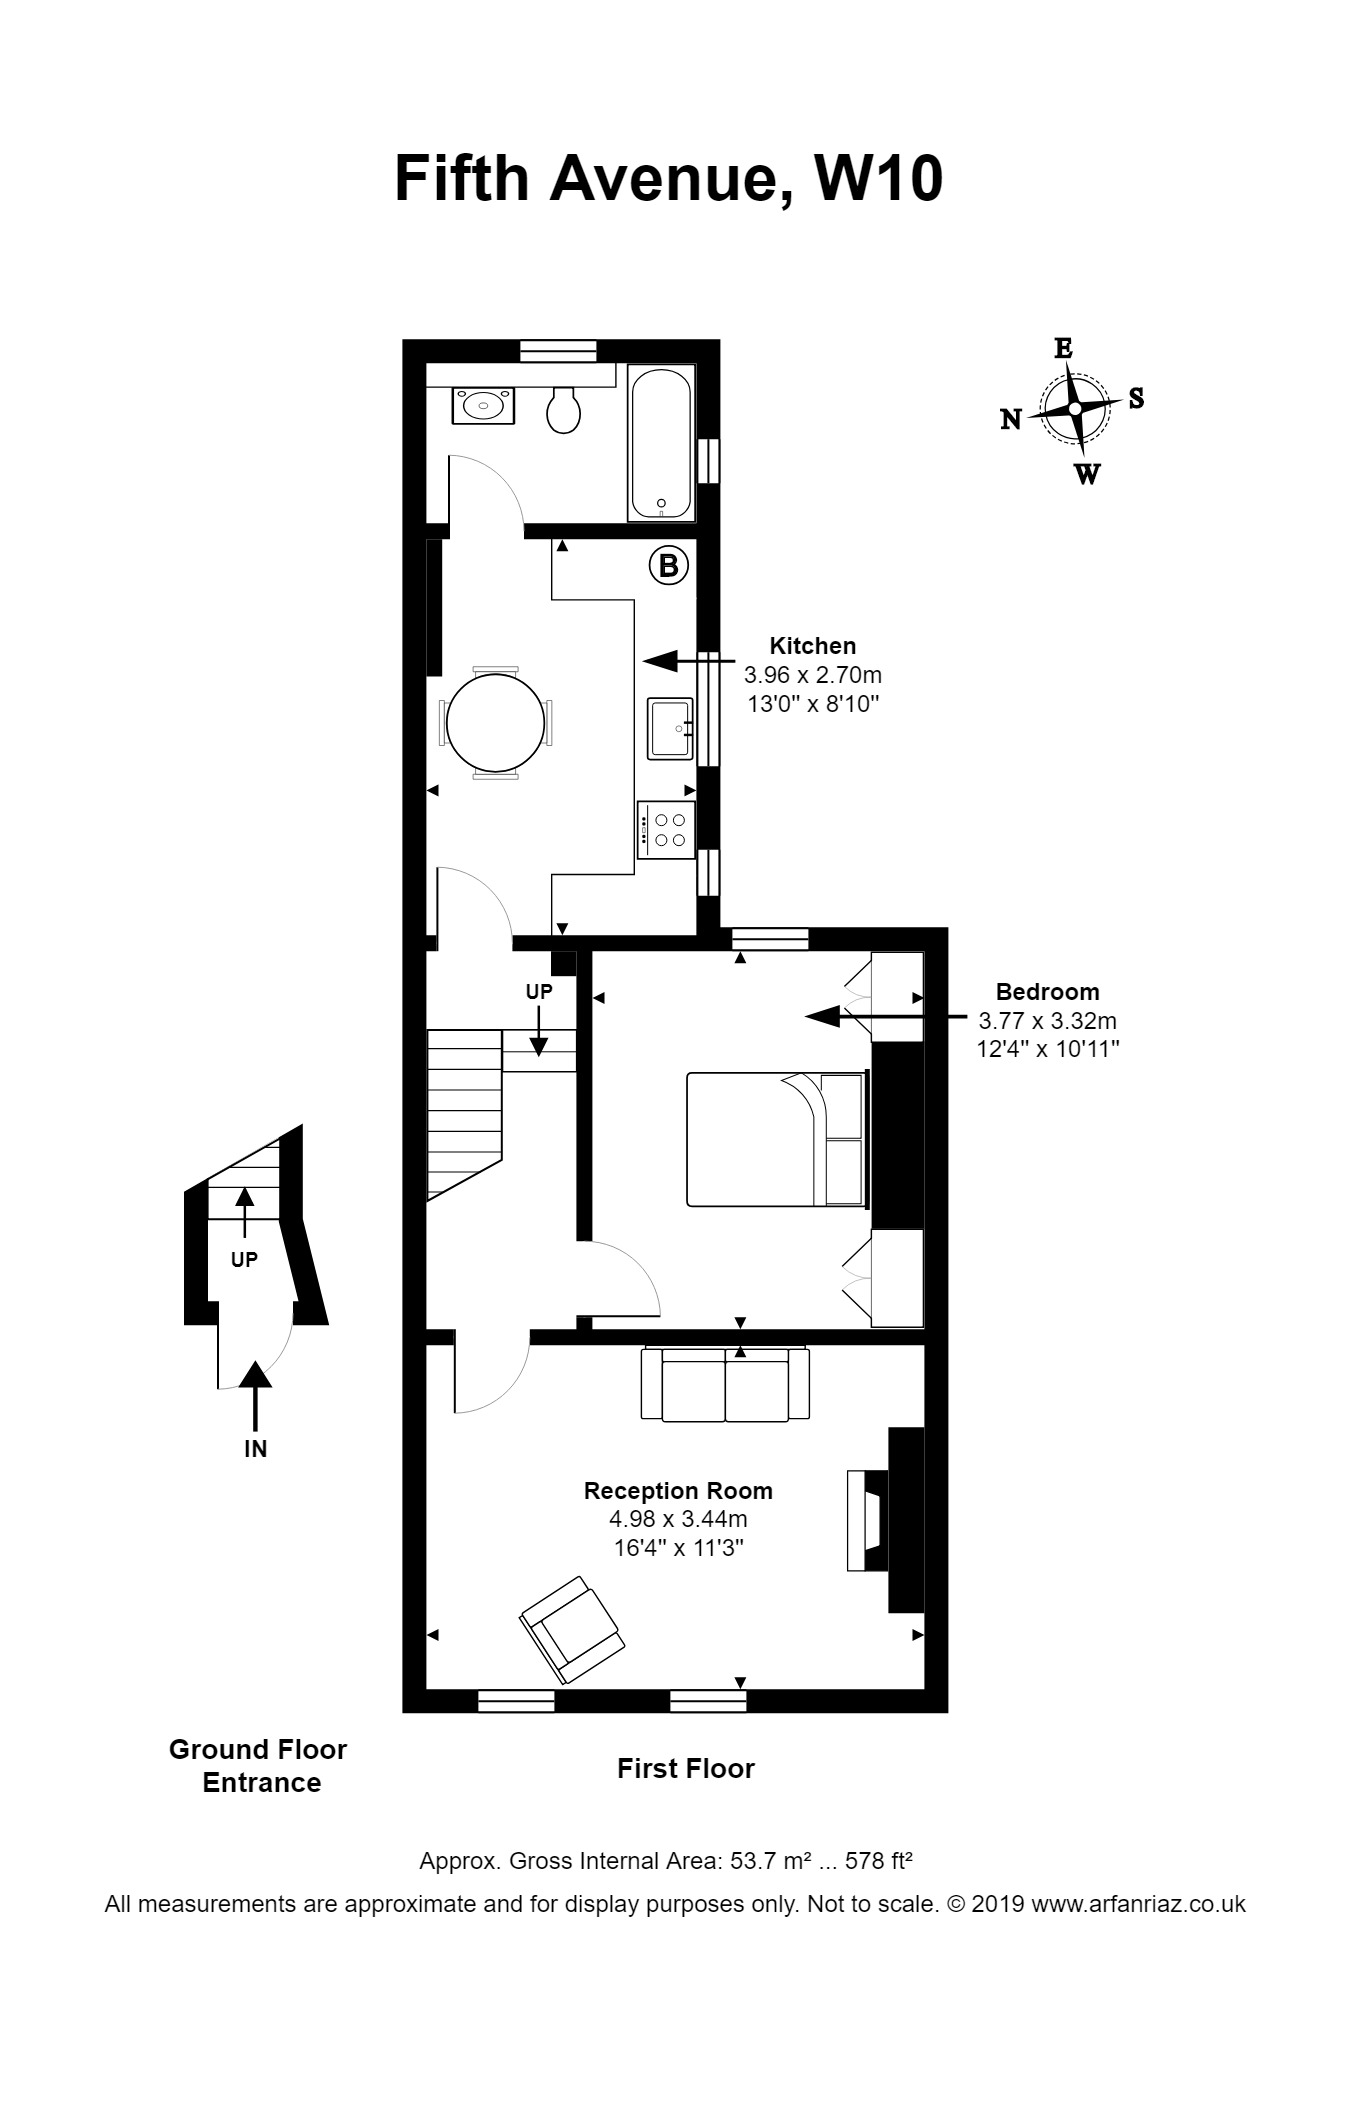 Property Floor Plans